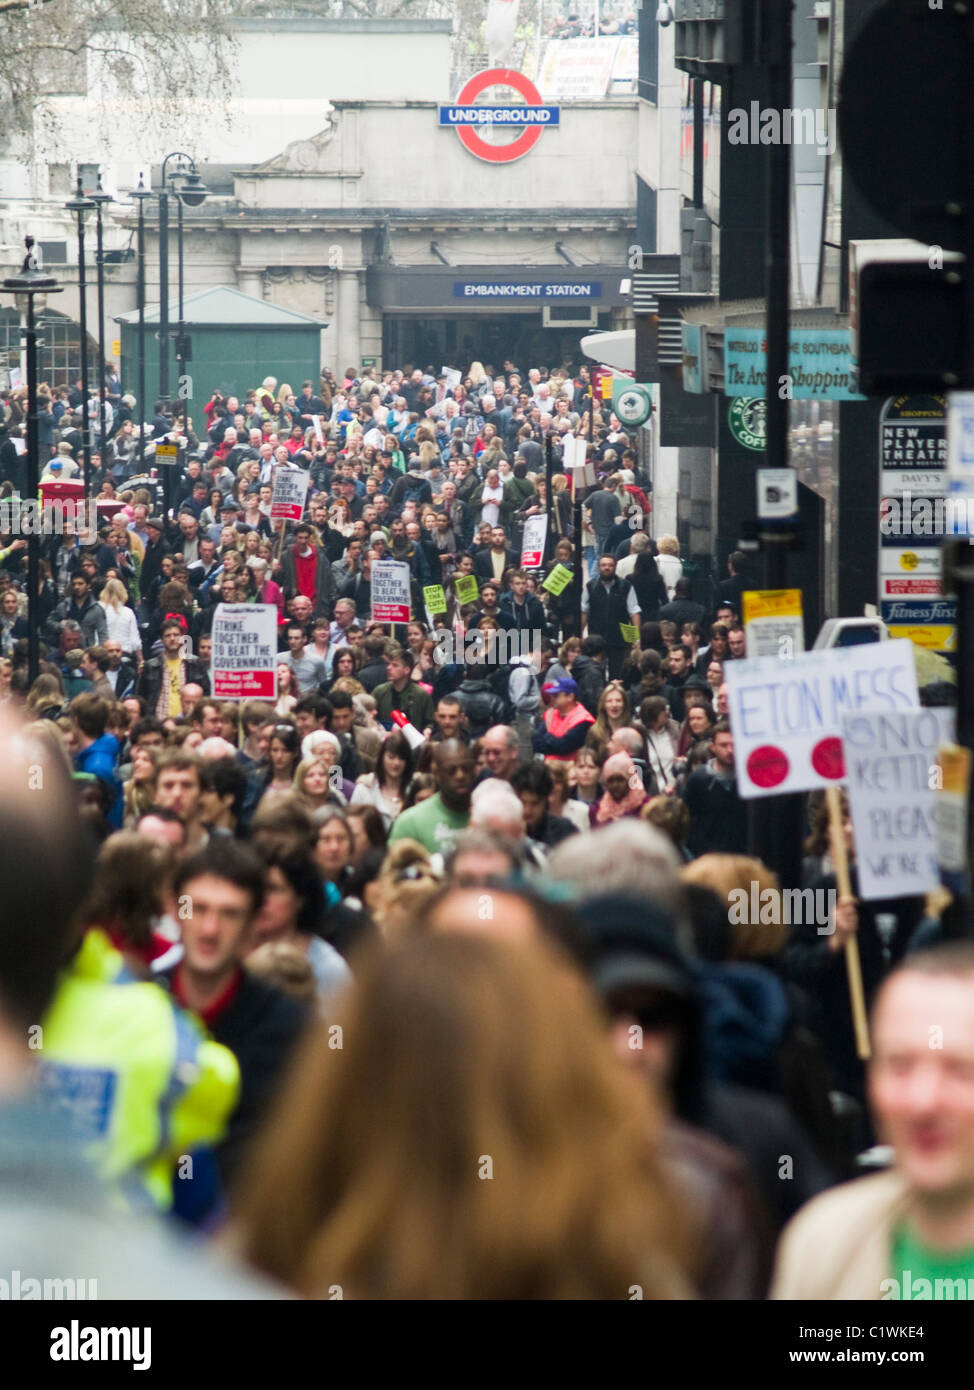 Demonstranten Spaziergang-Villiers Straße als sie schneidet nehmen Sie Teil an einer Demonstration gegen die Regierung in London. Stockfoto